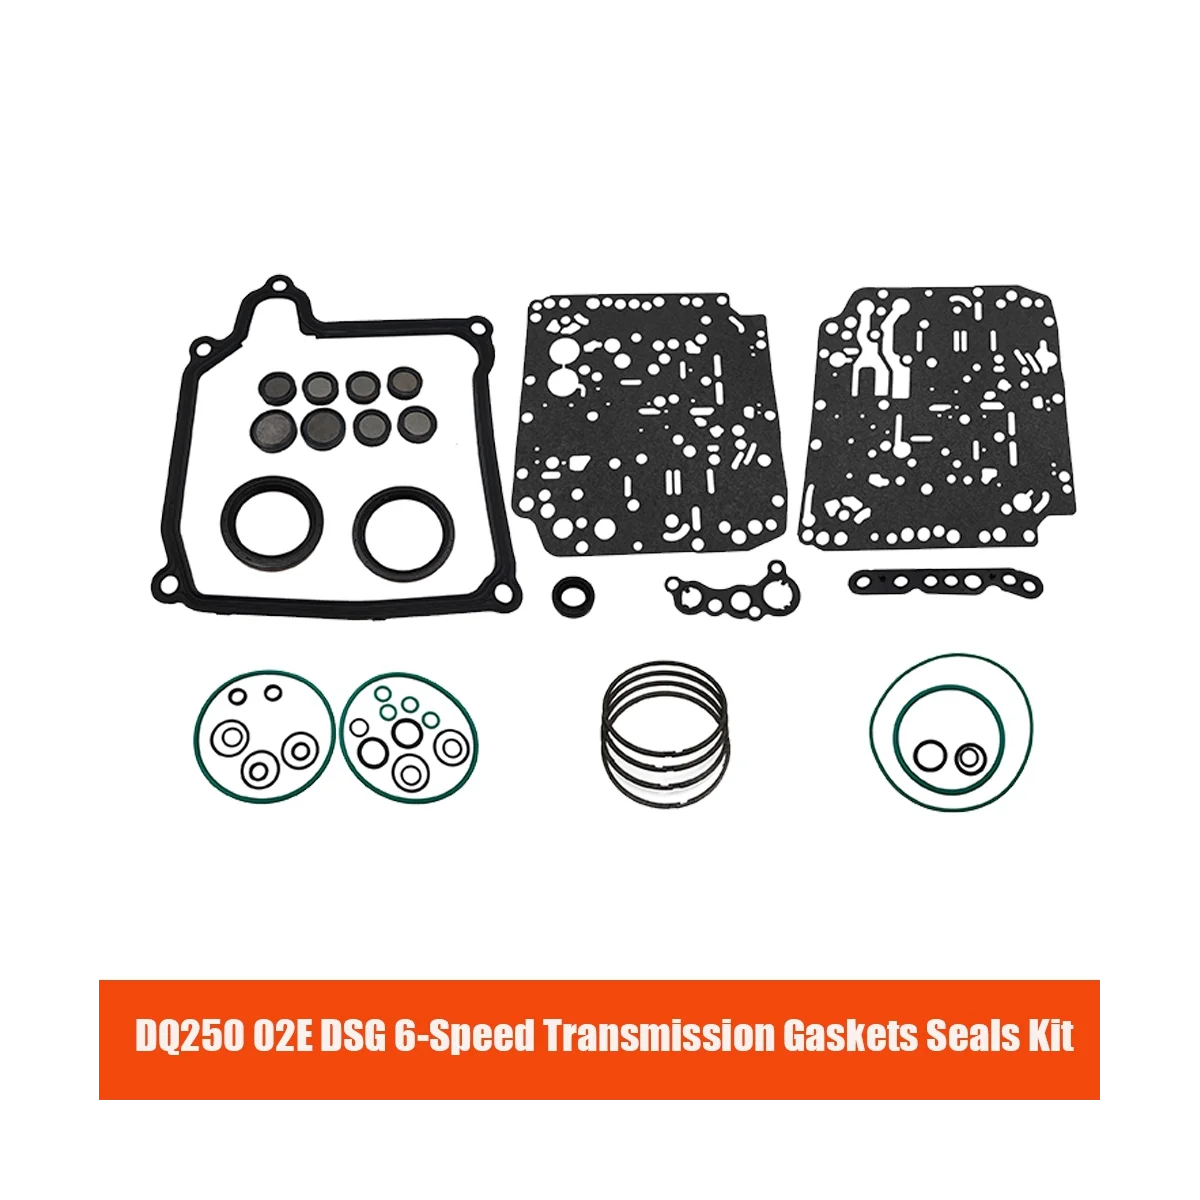 

DQ250 02E DSG Gearbox Repair Set for Audi A3 Q3 Seta Skoda Beetle Golf Jetta 6-Speed Transmission Gaskets Seals Kit